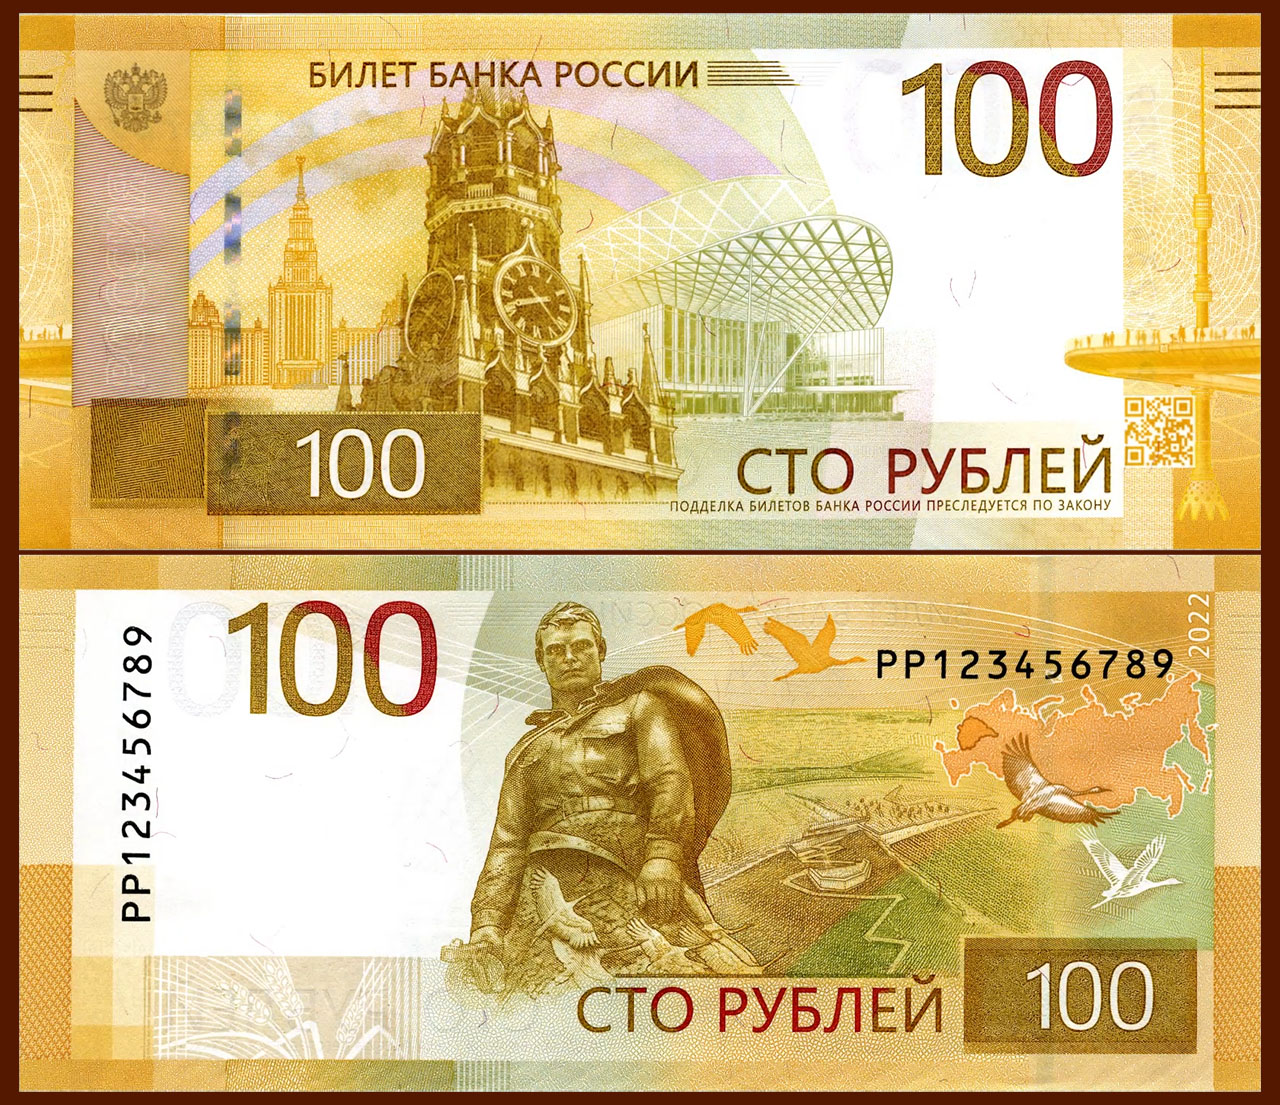 Менять так менять — ЦБ представил новые банкноты номиналом 100 рублей